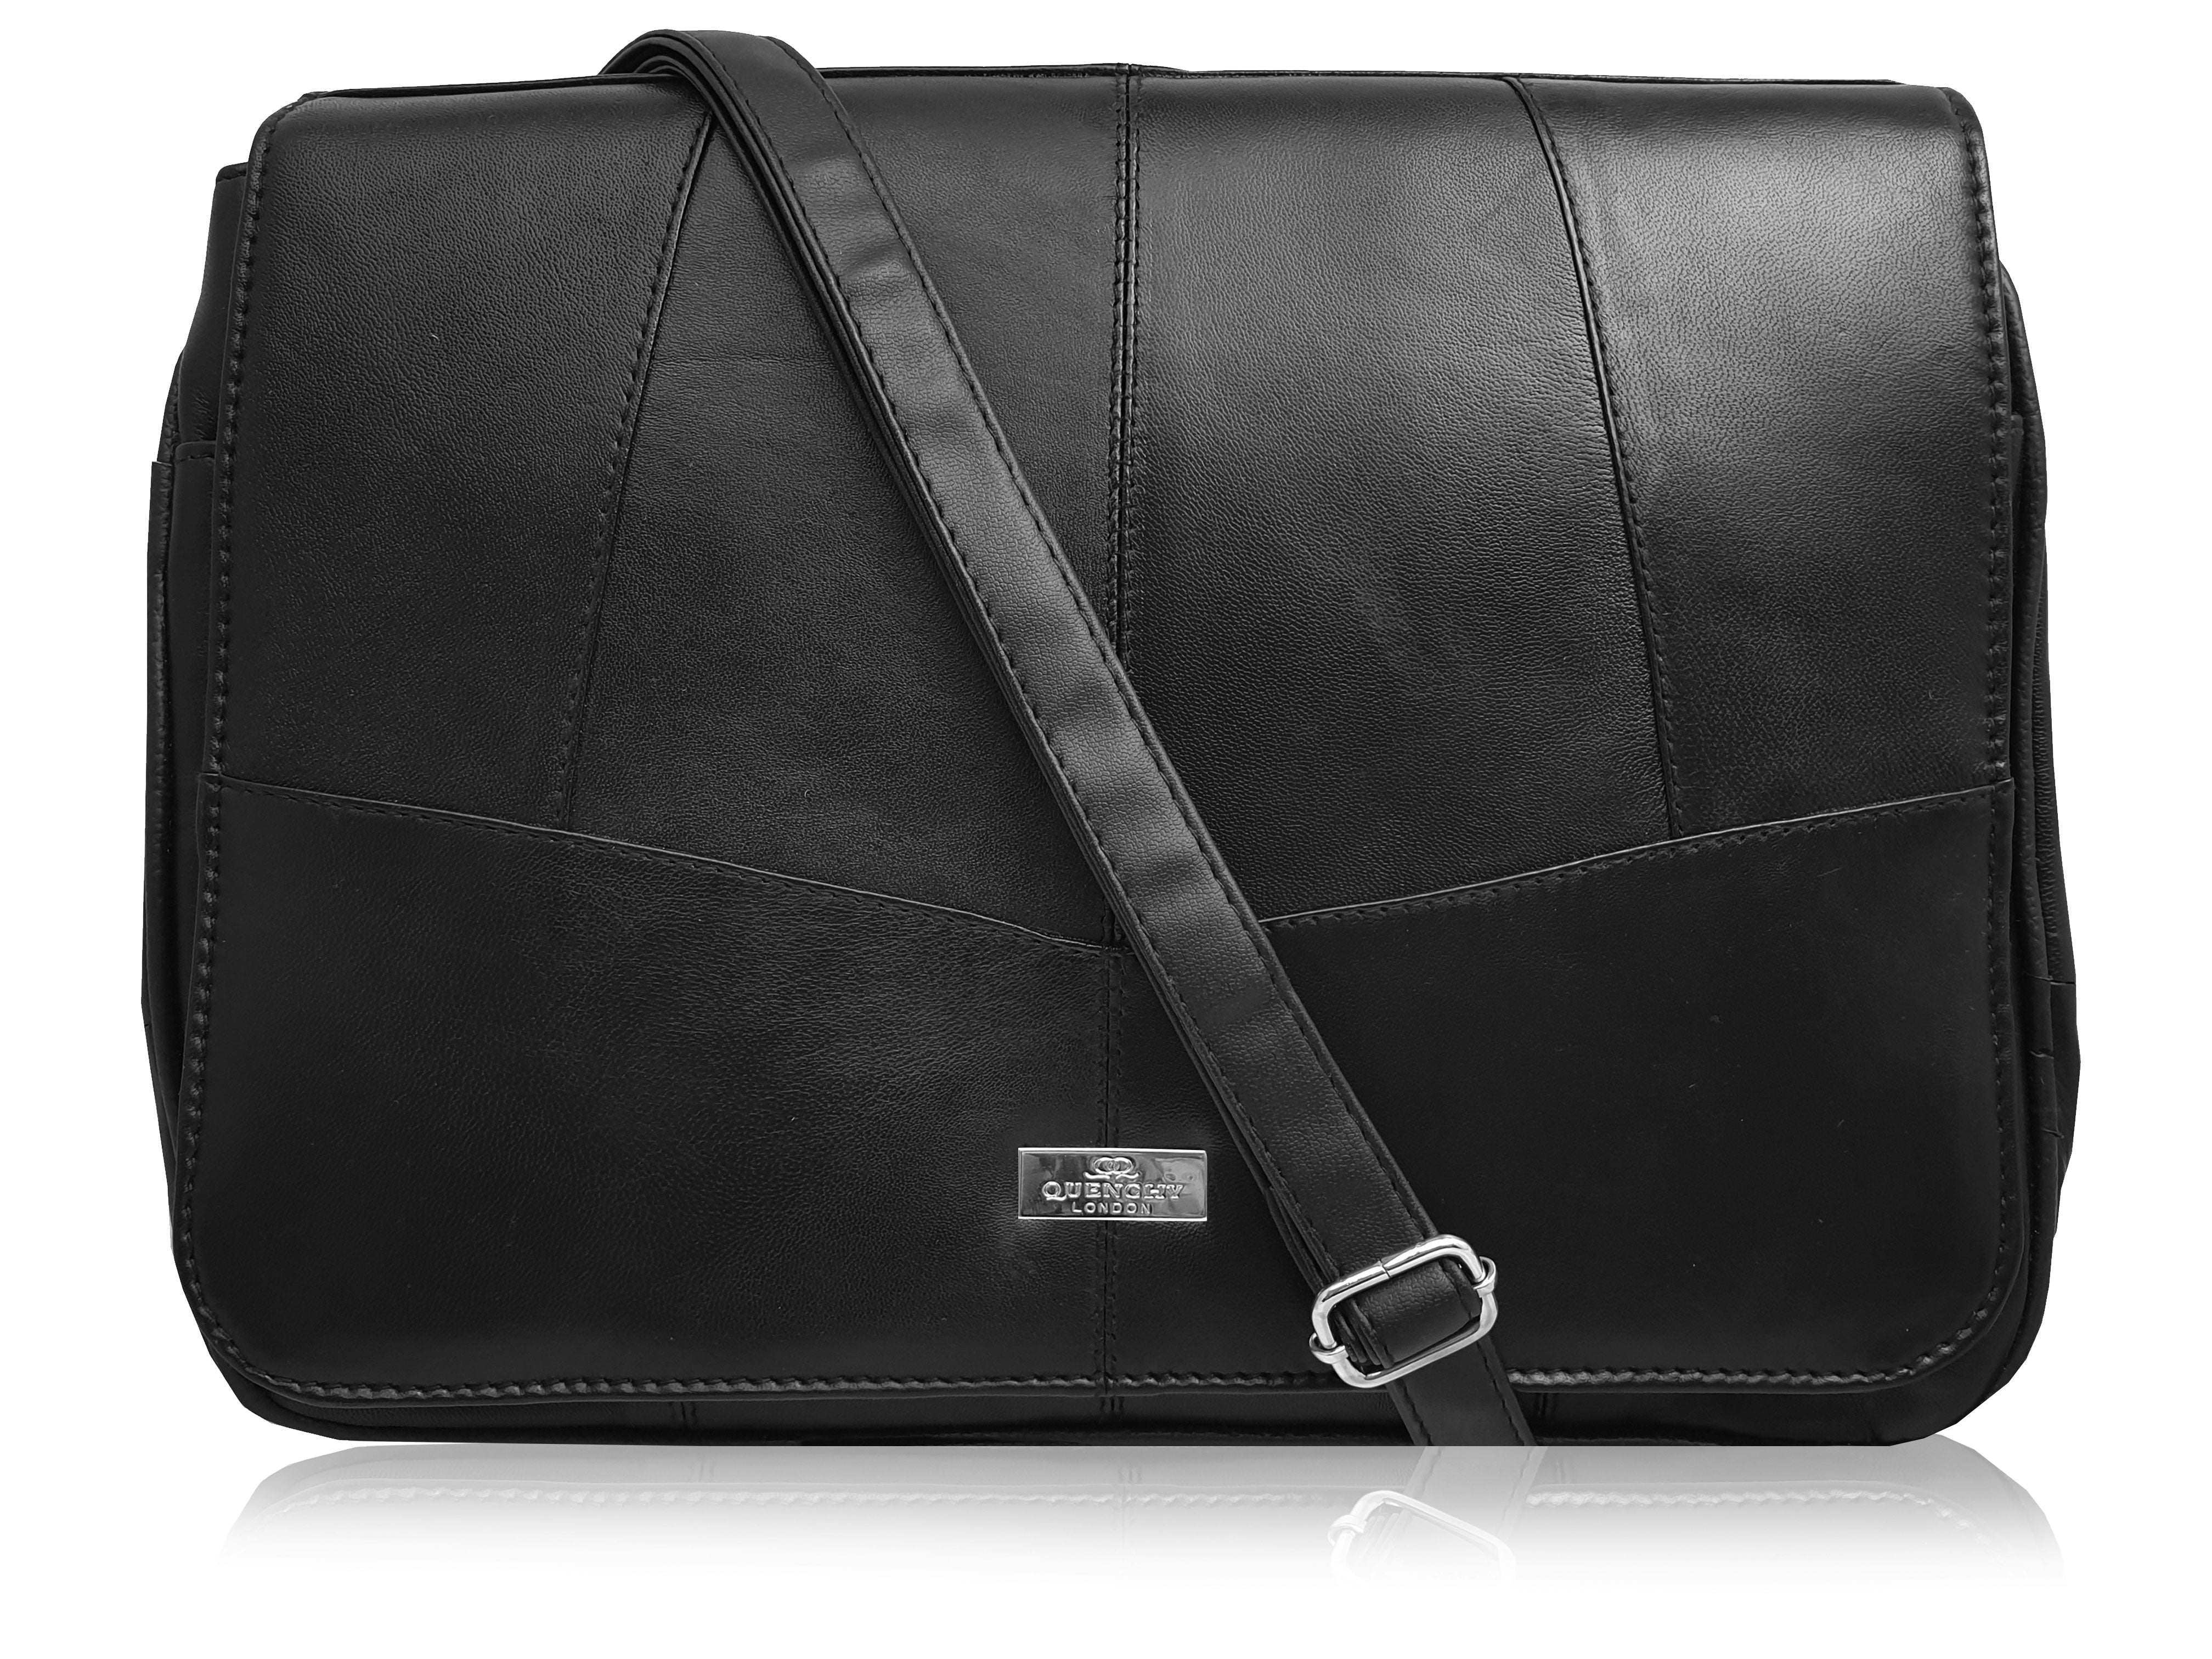 Black Designers Handbags | IQS Executive